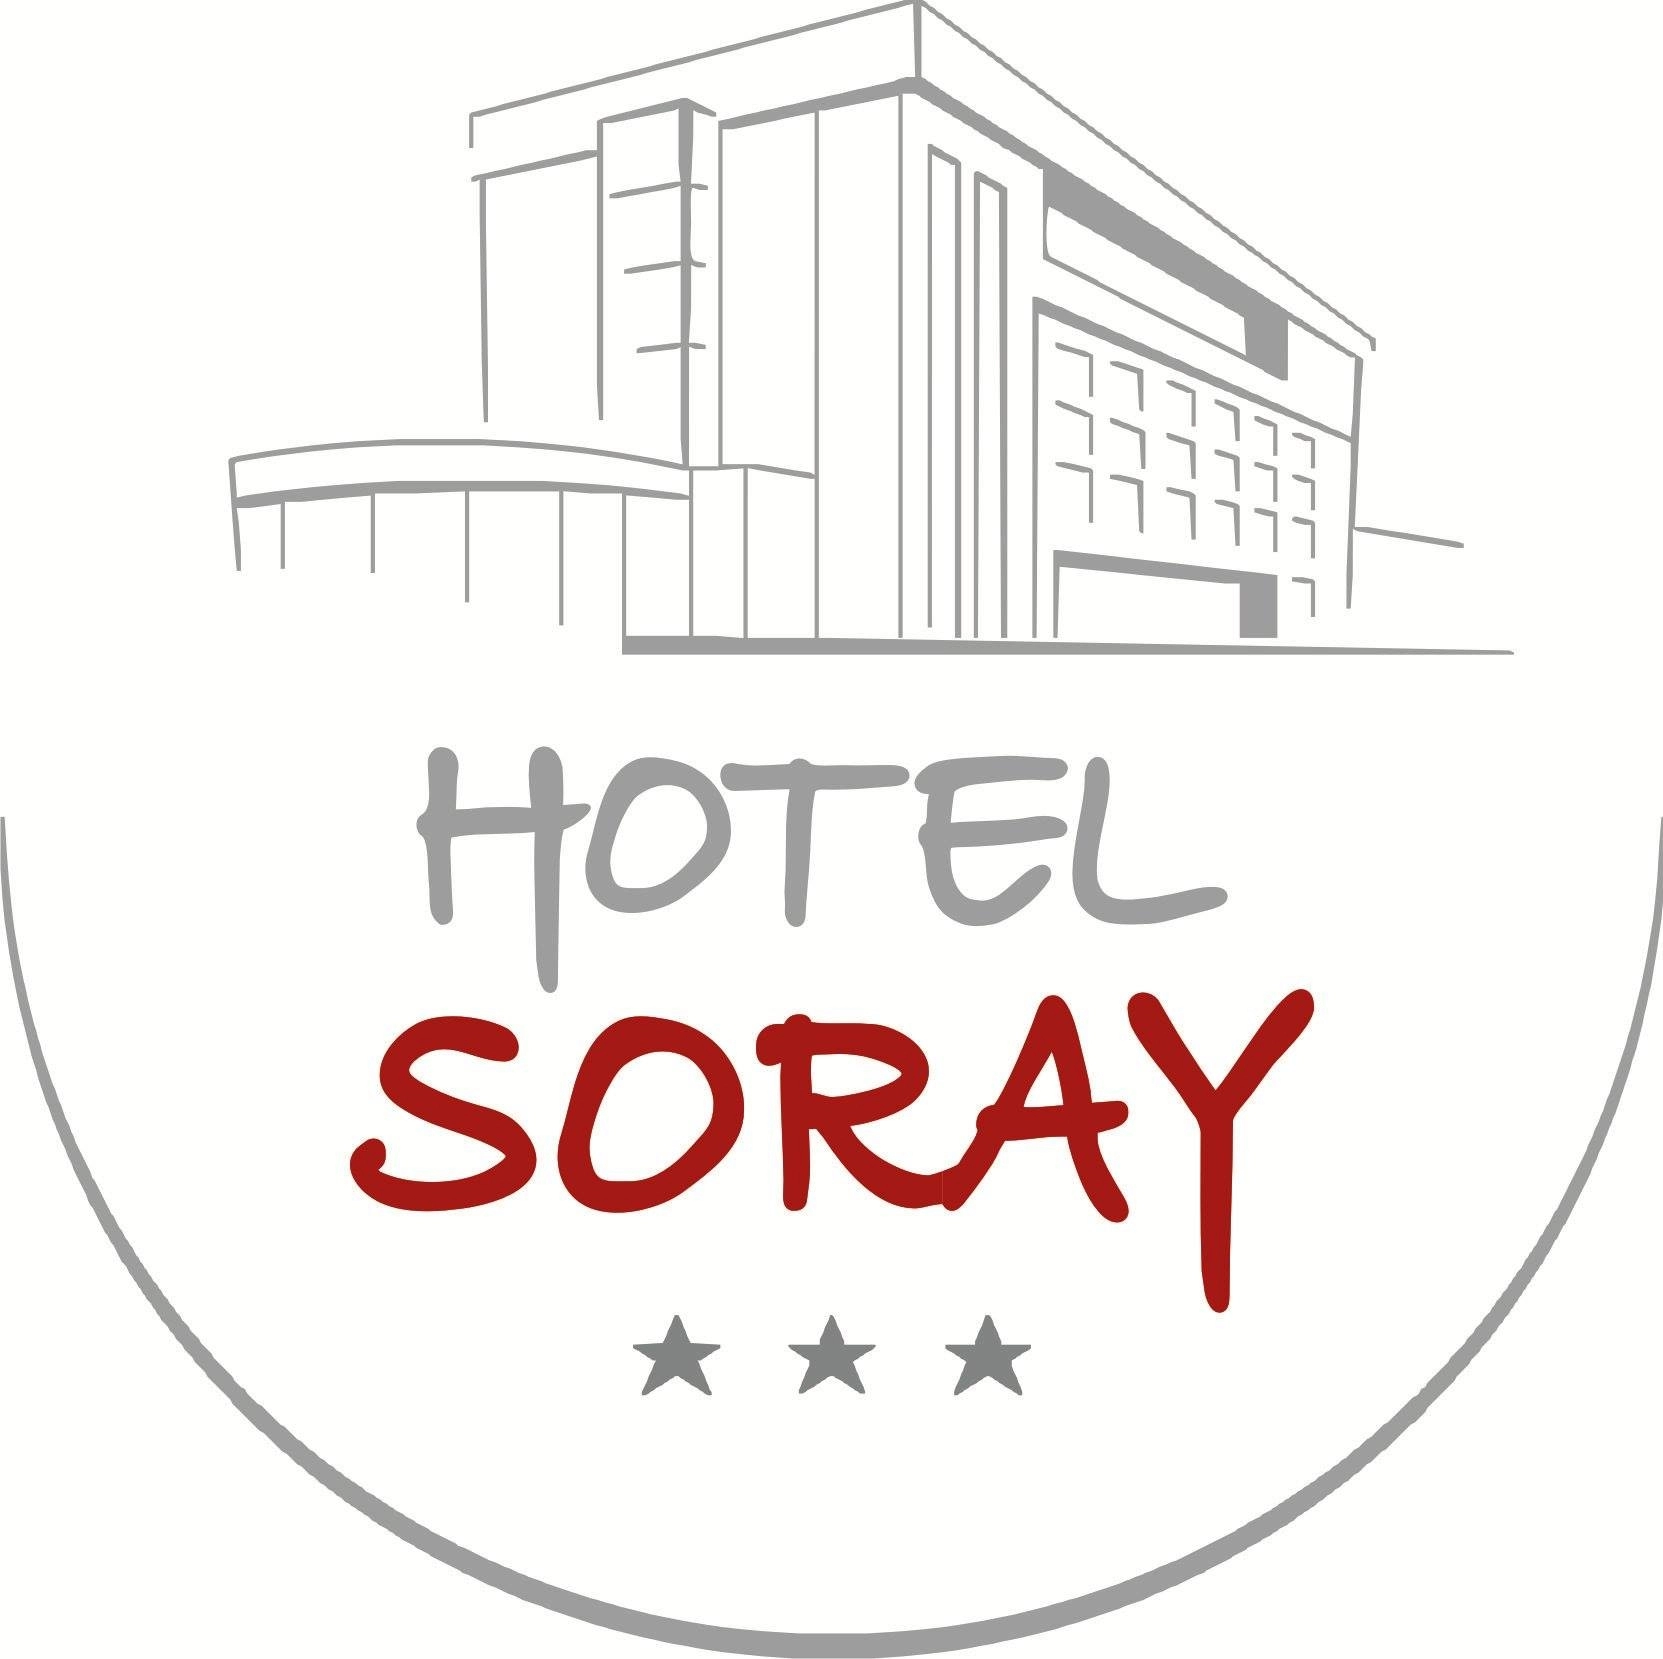 Hotel Soray